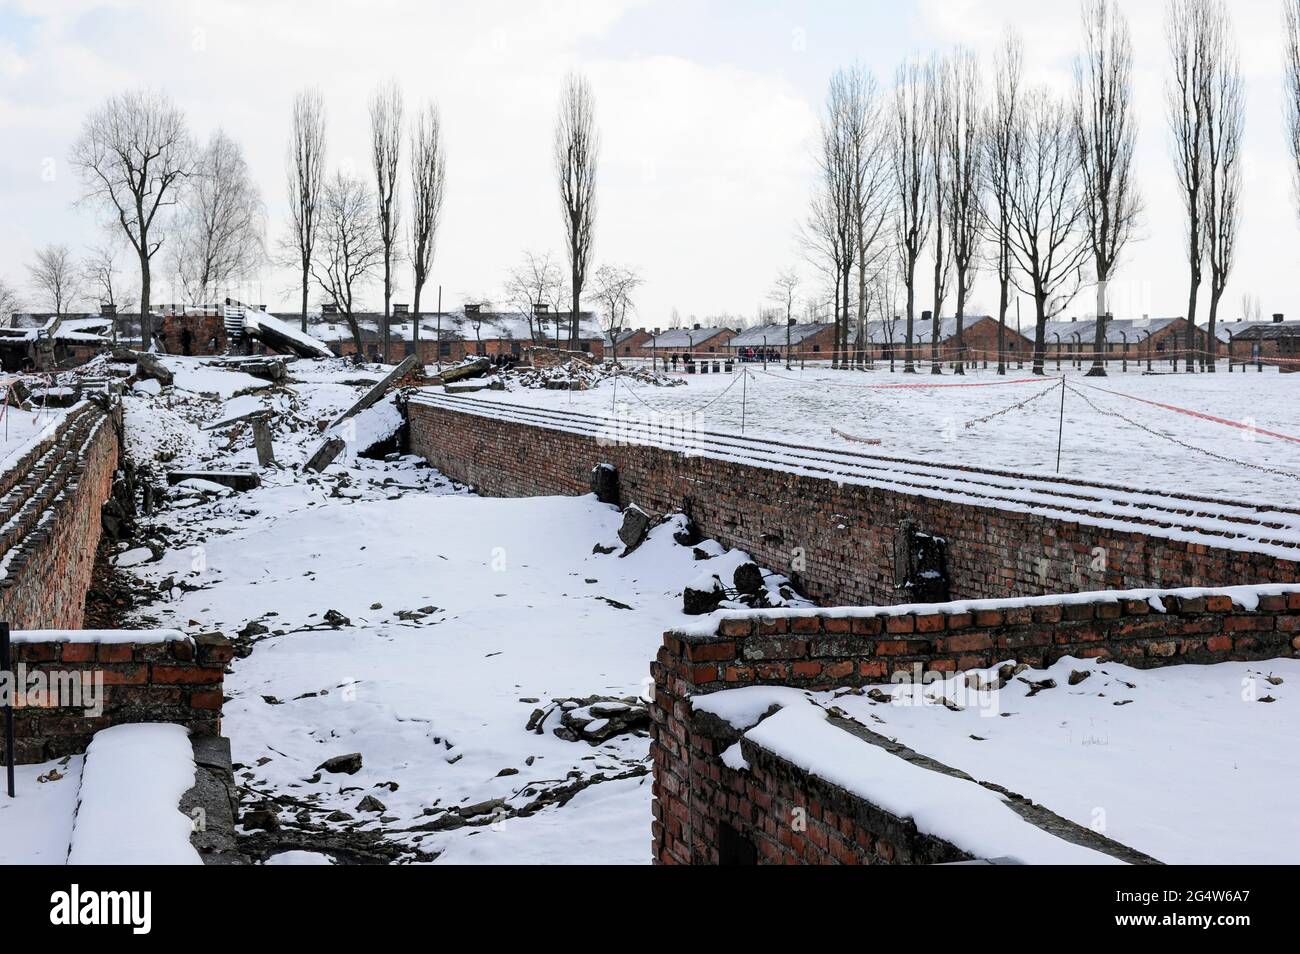 POLEN , Oswiecim, Auschwitz-Birkenau, Konzentrationslager des deutschen Nazi-Regimes, wo 1 Million juden von der SS ermordet wurden (1940–1945), Ruinen der Gaskammer / POLEN Auschwitz-Birkenau, deutsches nationalistisches Konzentrations- und Vernichtungslager (1940–1945) , hier wurden ca. 1 Million Juden durch die SS ermordet, Ruine der Gaskammern Stockfoto